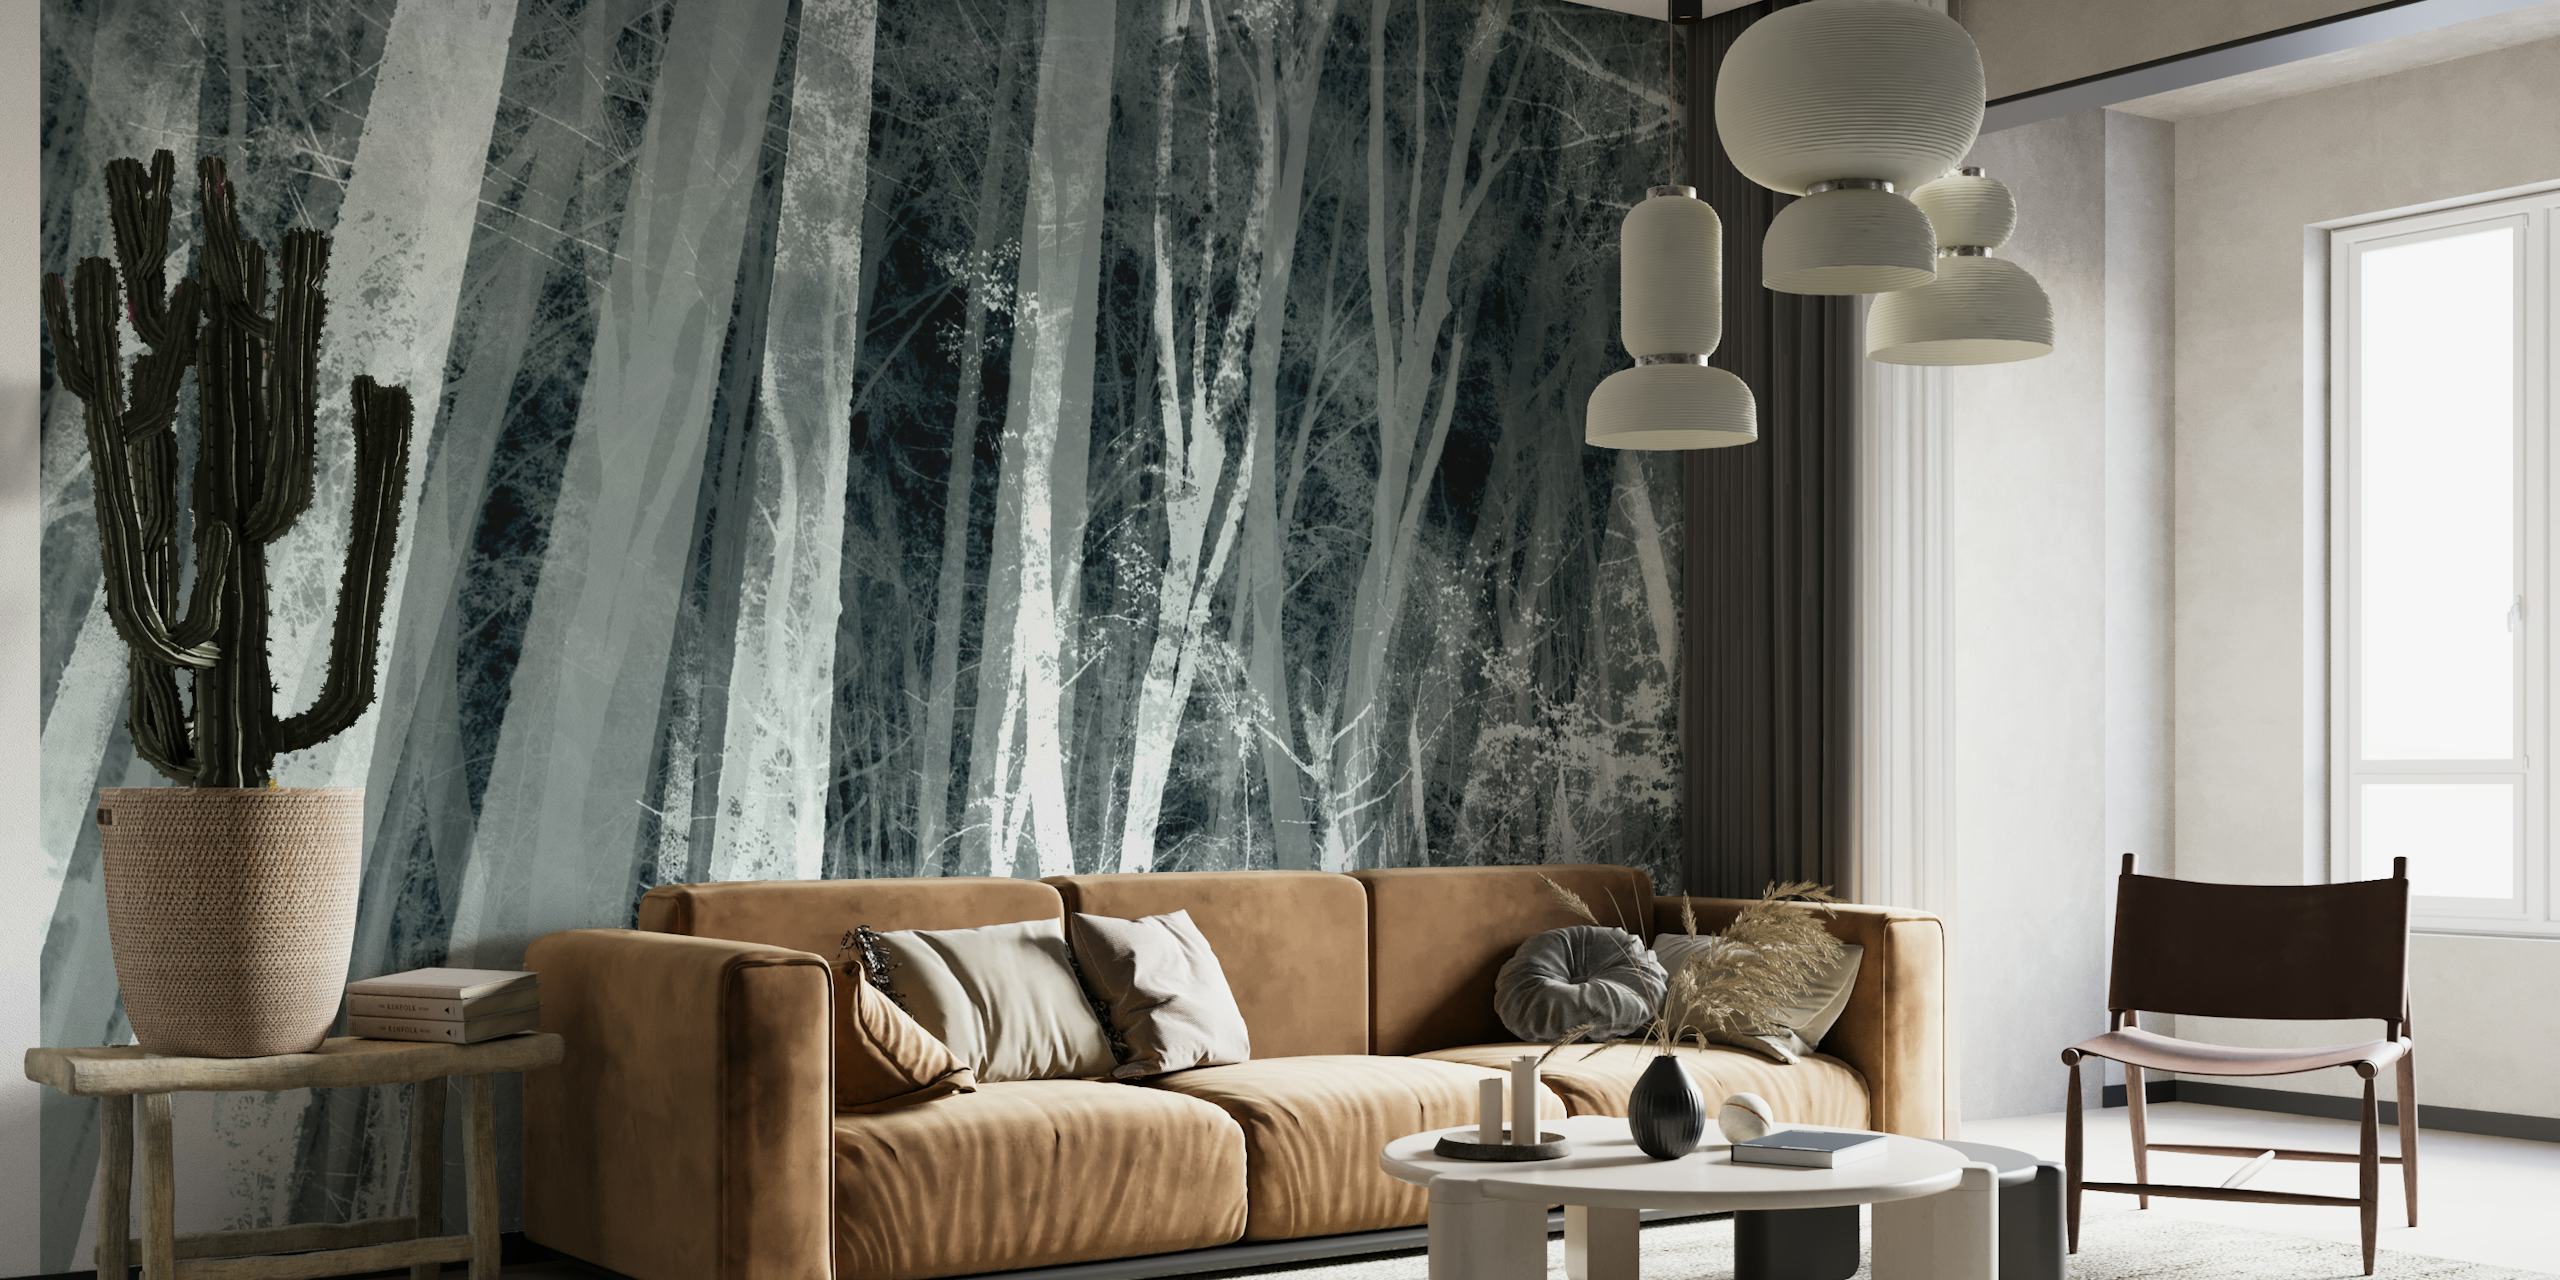 Um mural de parede de uma floresta em tons de cinza, com árvores altas e uma atmosfera enevoada.